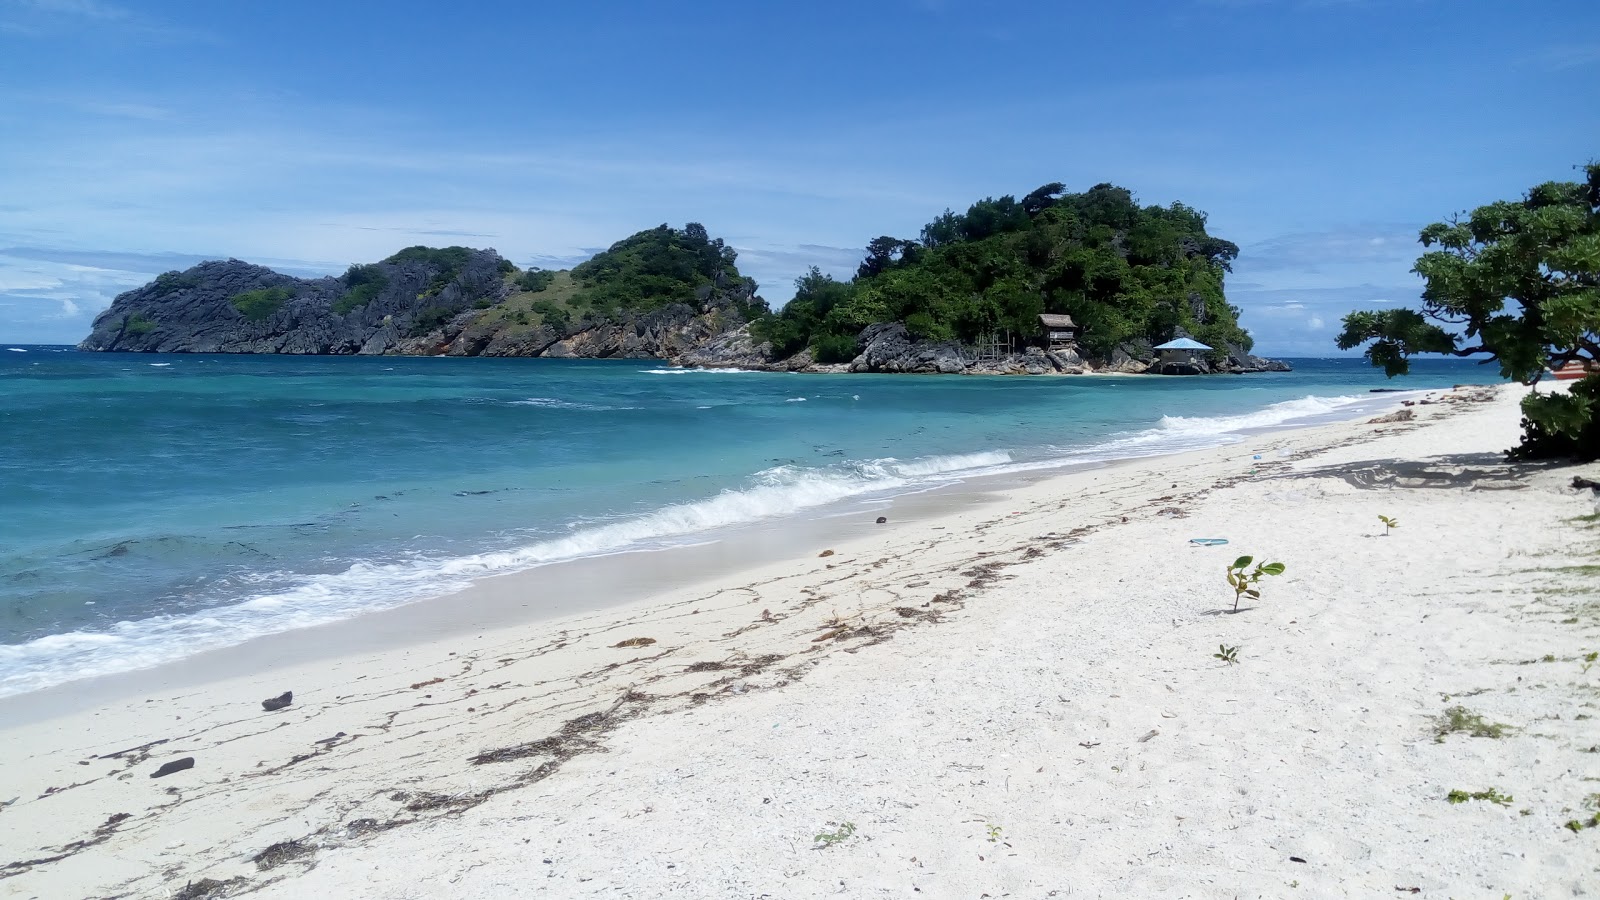 Foto de Buyayao Island Resort - lugar popular entre os apreciadores de relaxamento